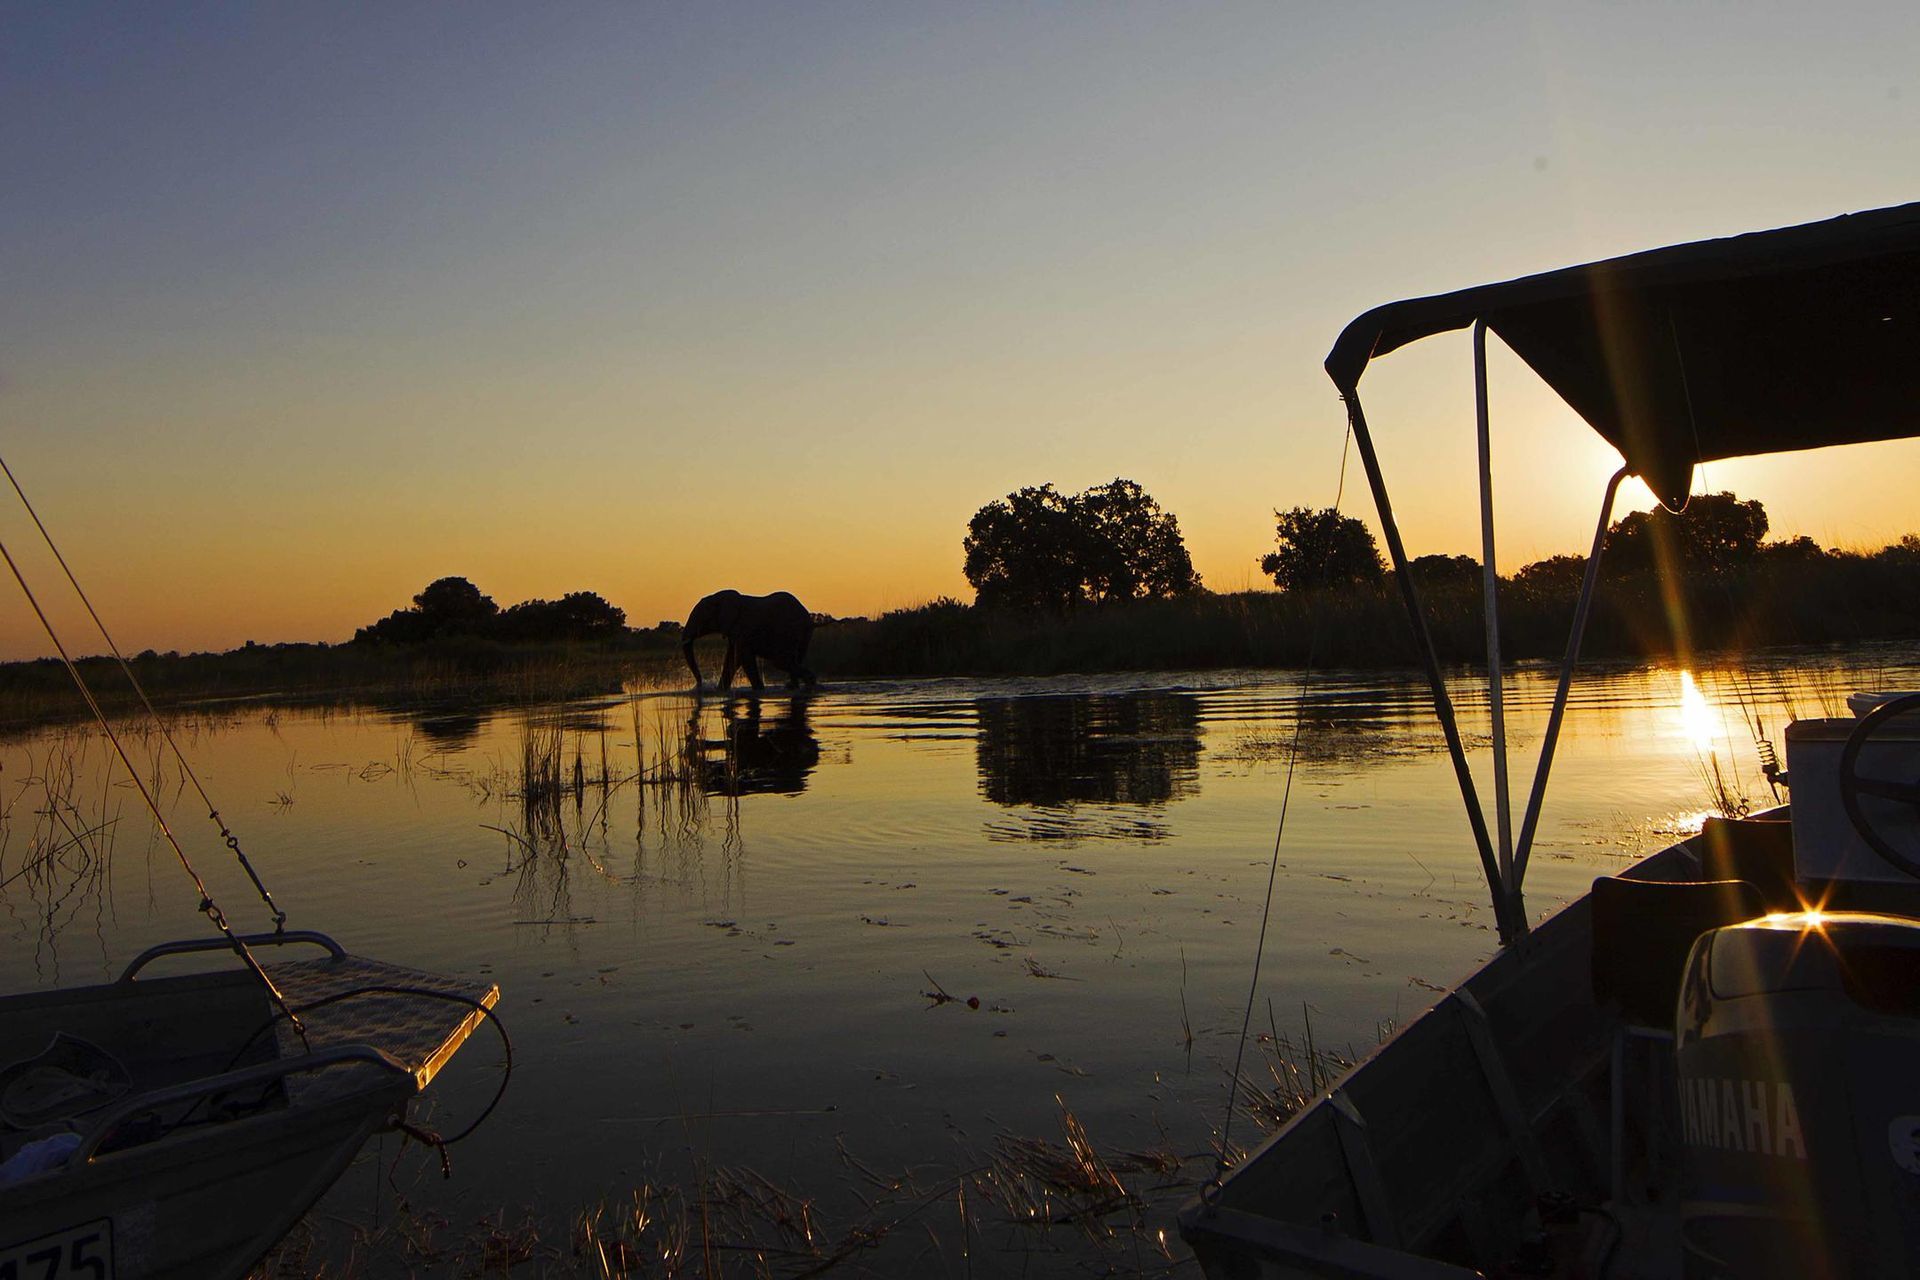 Camp Okavango